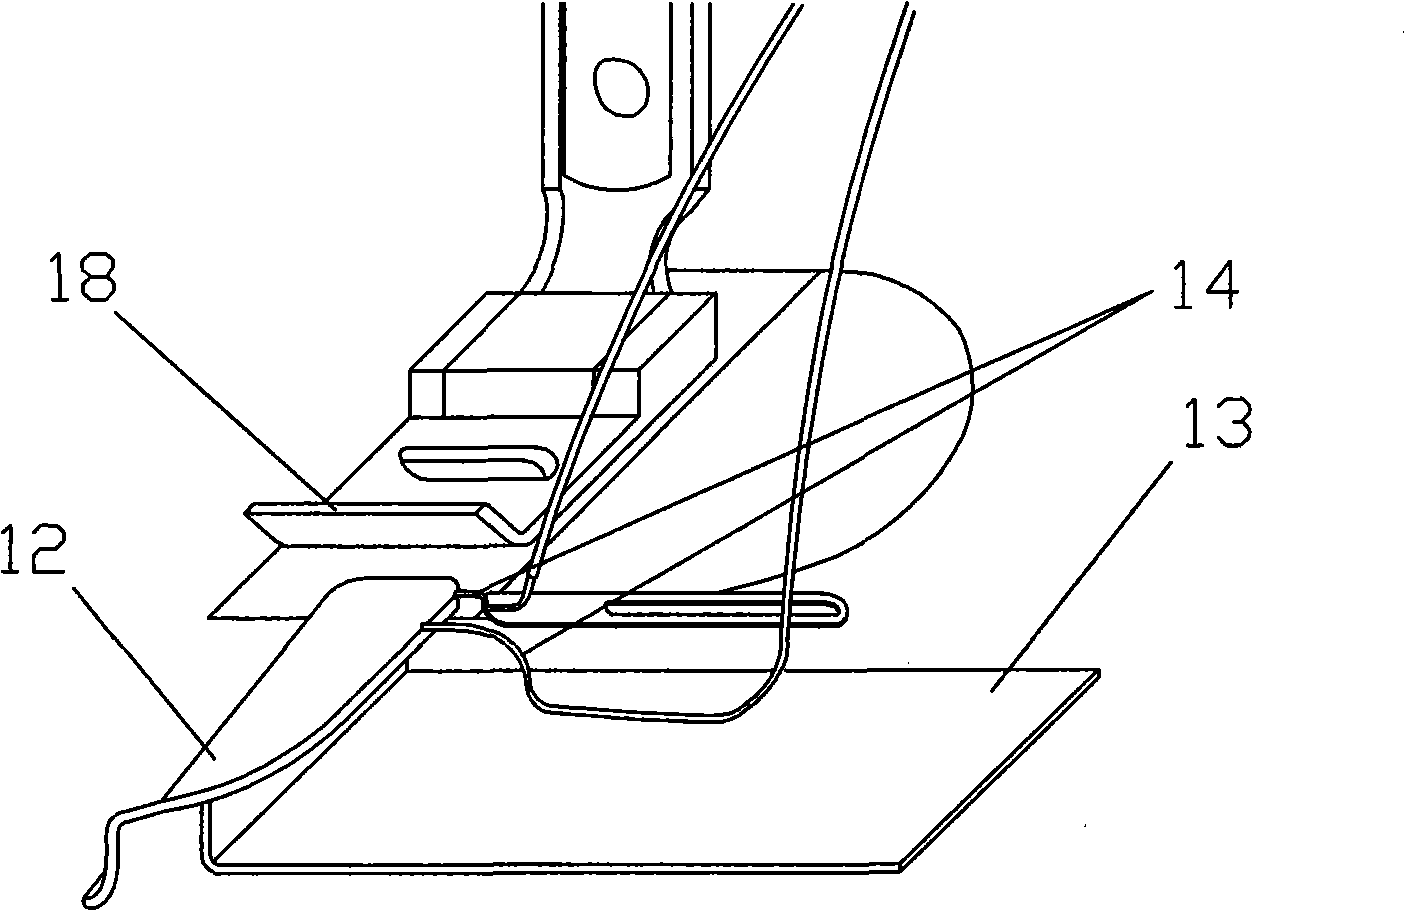 Double-head herringbone thread sewing machine and method for making same